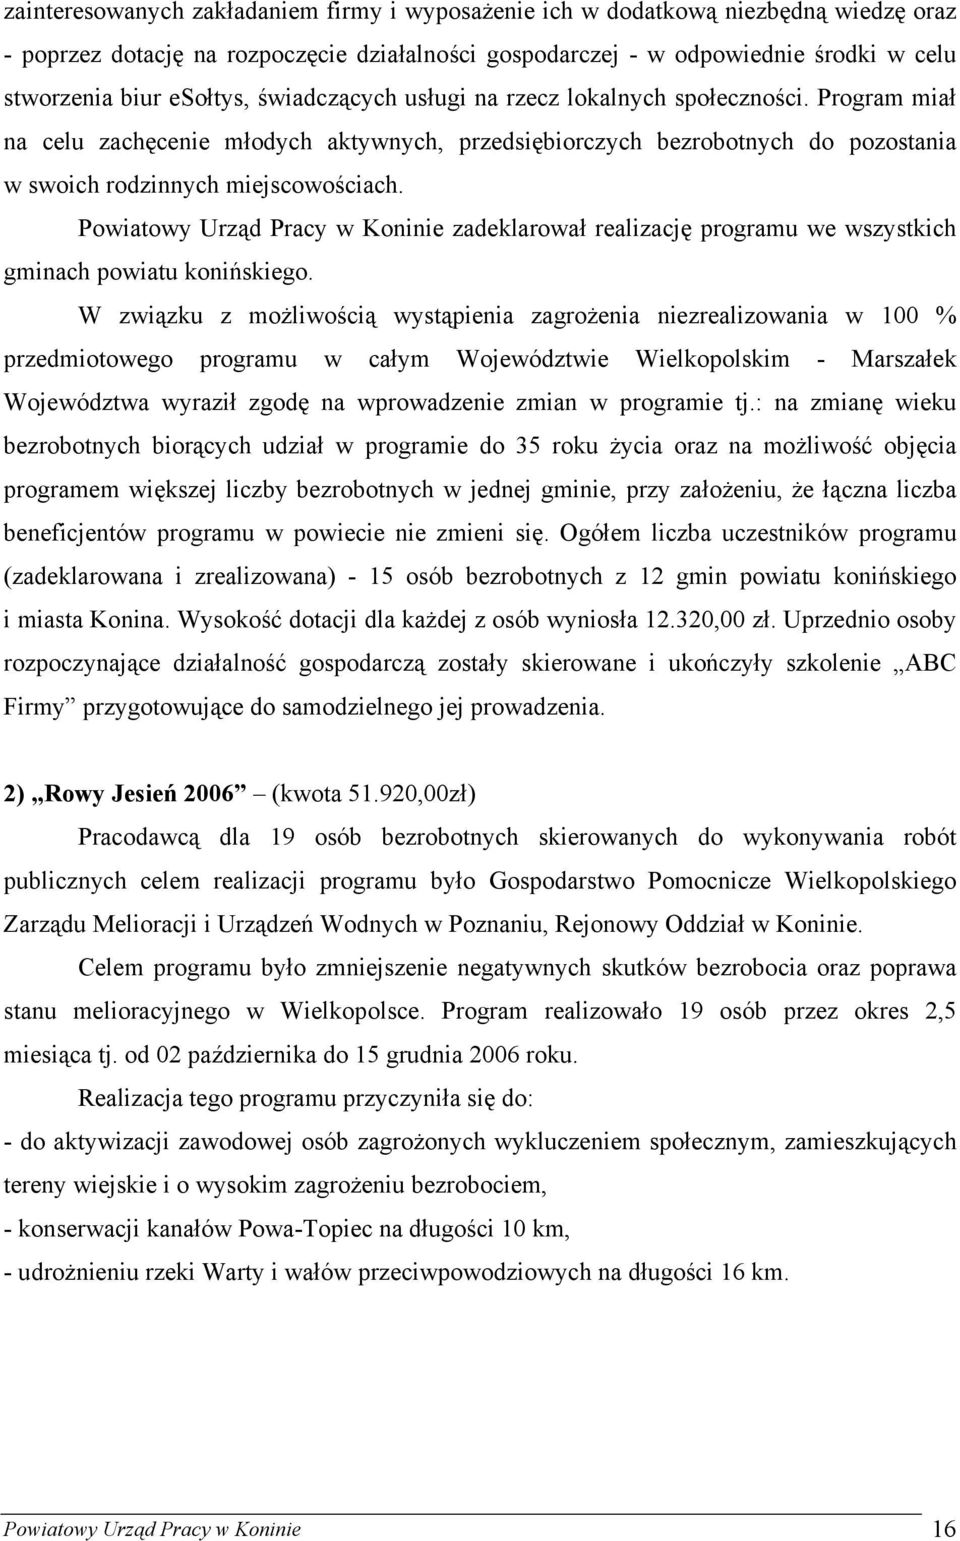 Powiatowy Urząd Pracy w Koninie zadeklarował realizację programu we wszystkich gminach powiatu konińskiego.